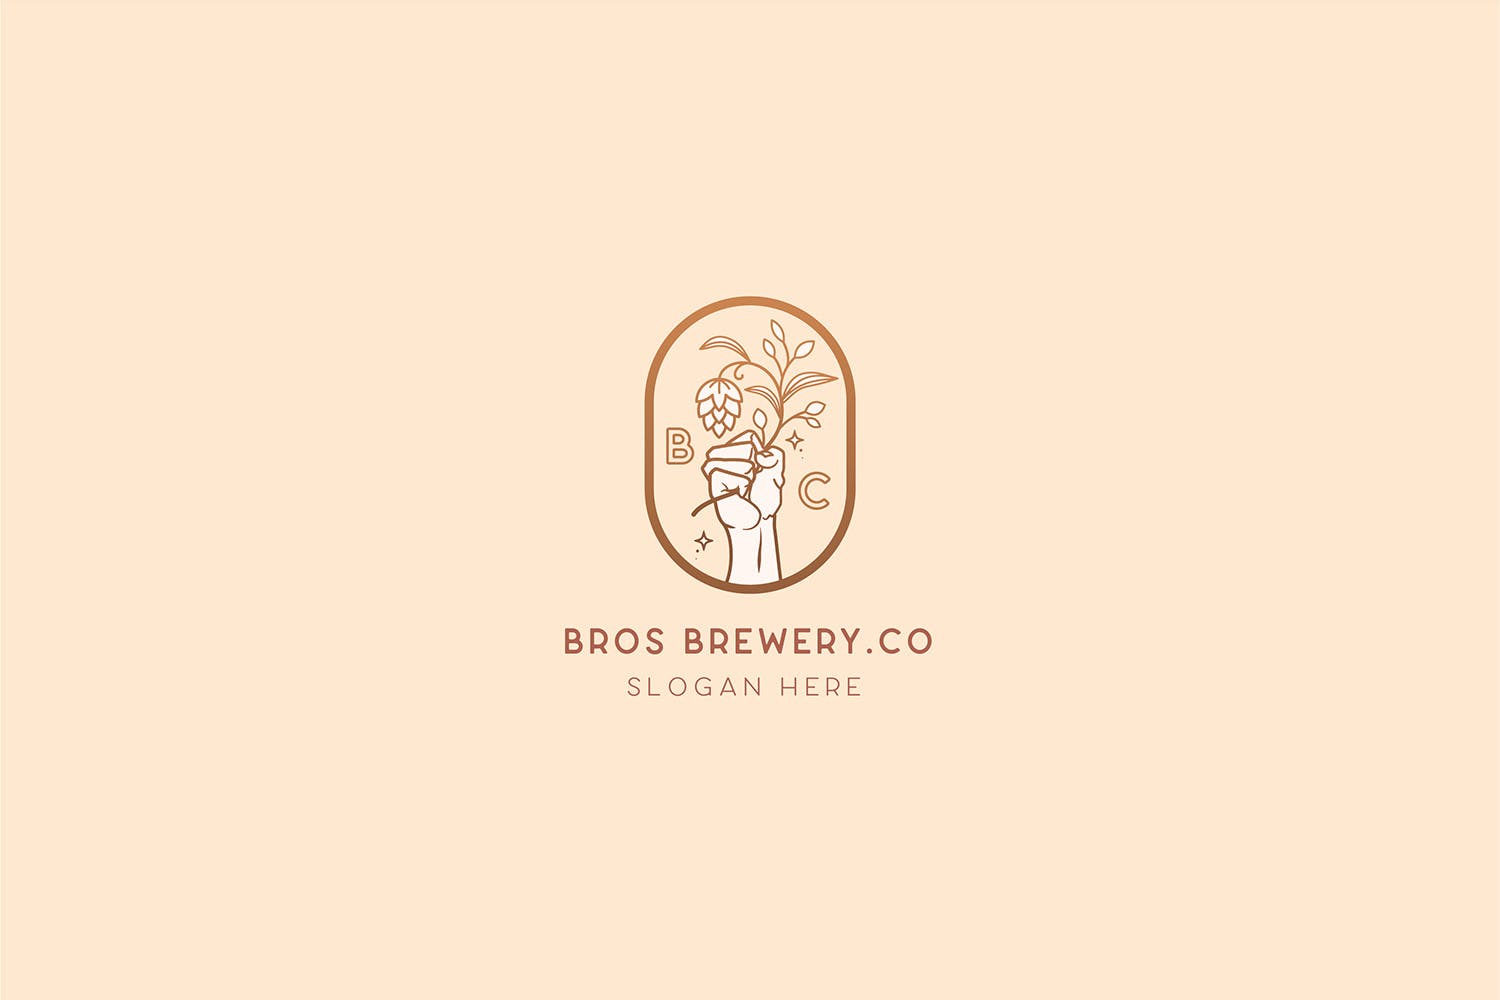 咖啡/啤酒品牌Logo设计16图库精选模板 Brewery Brotherhood cafe beer Logo Template插图(2)